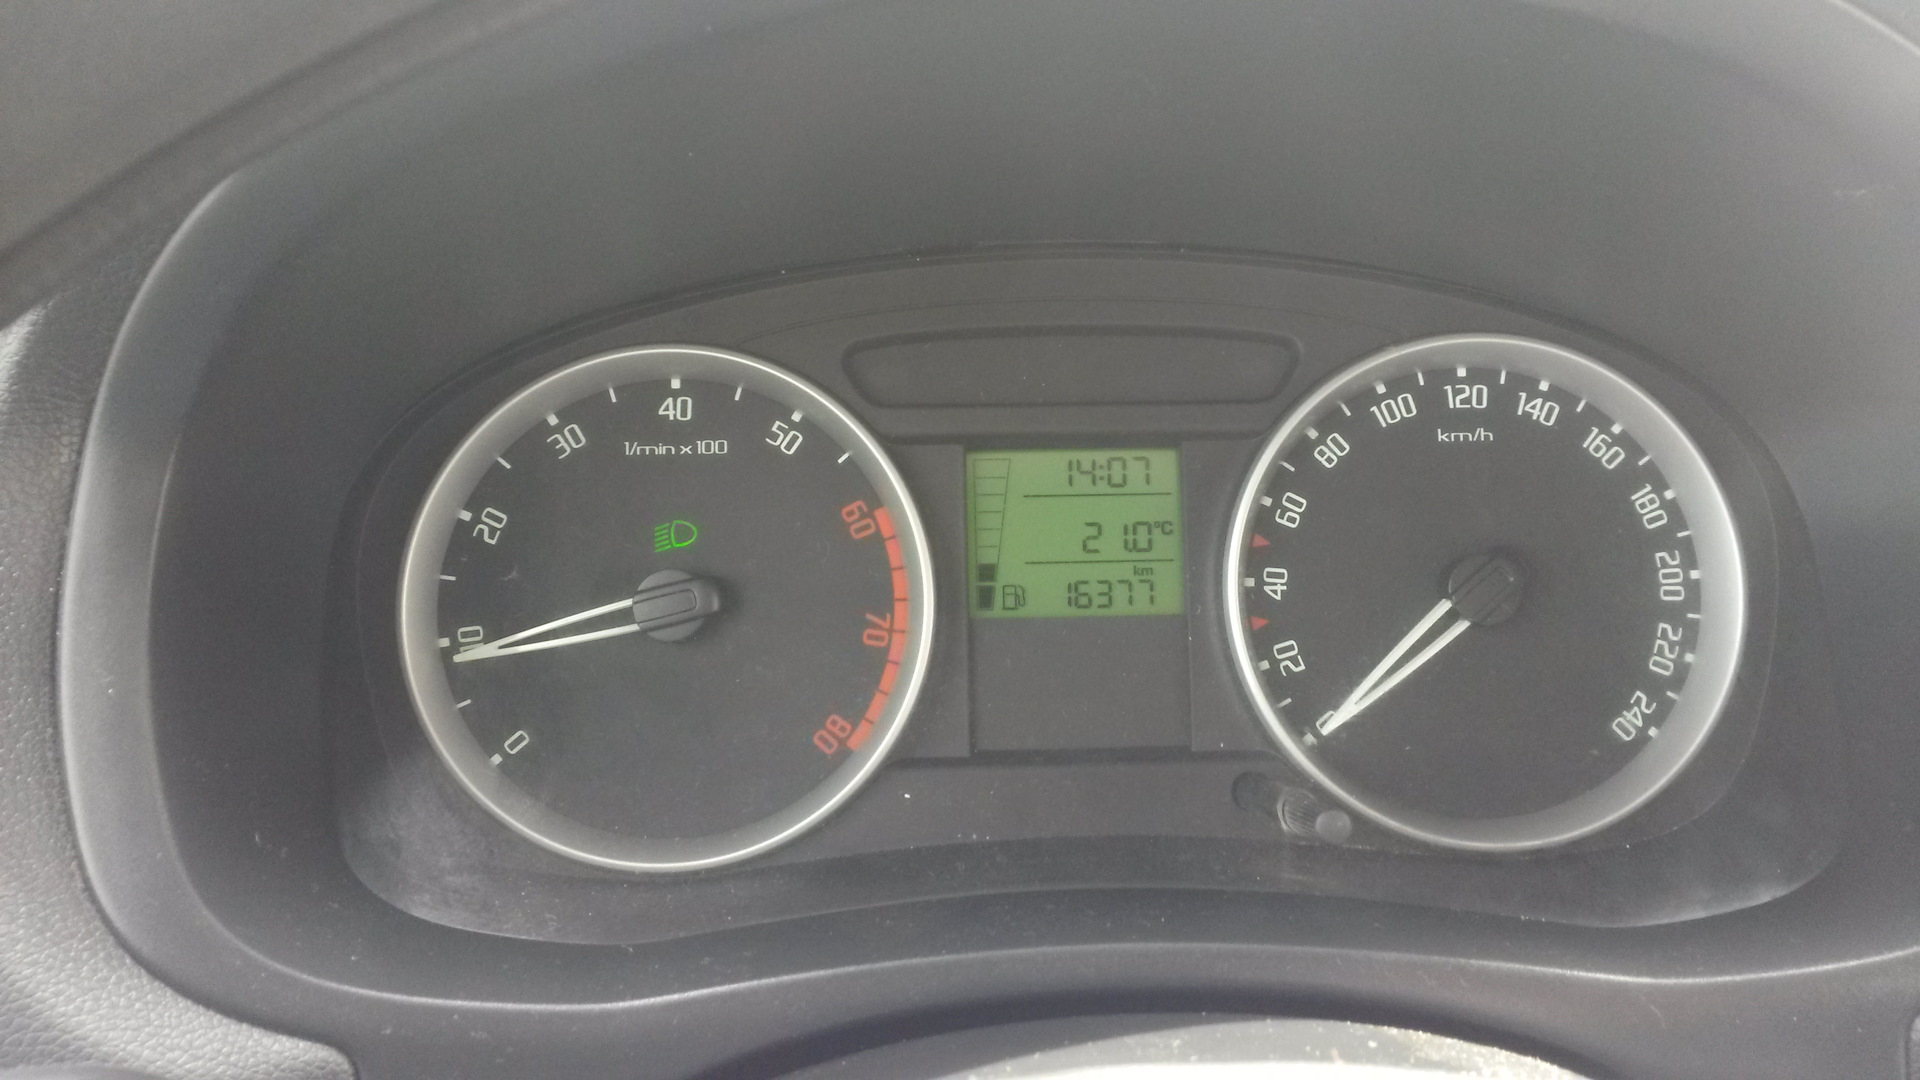 Термометр в Hyundai Tucson неправильно показывает температуру на улице фото